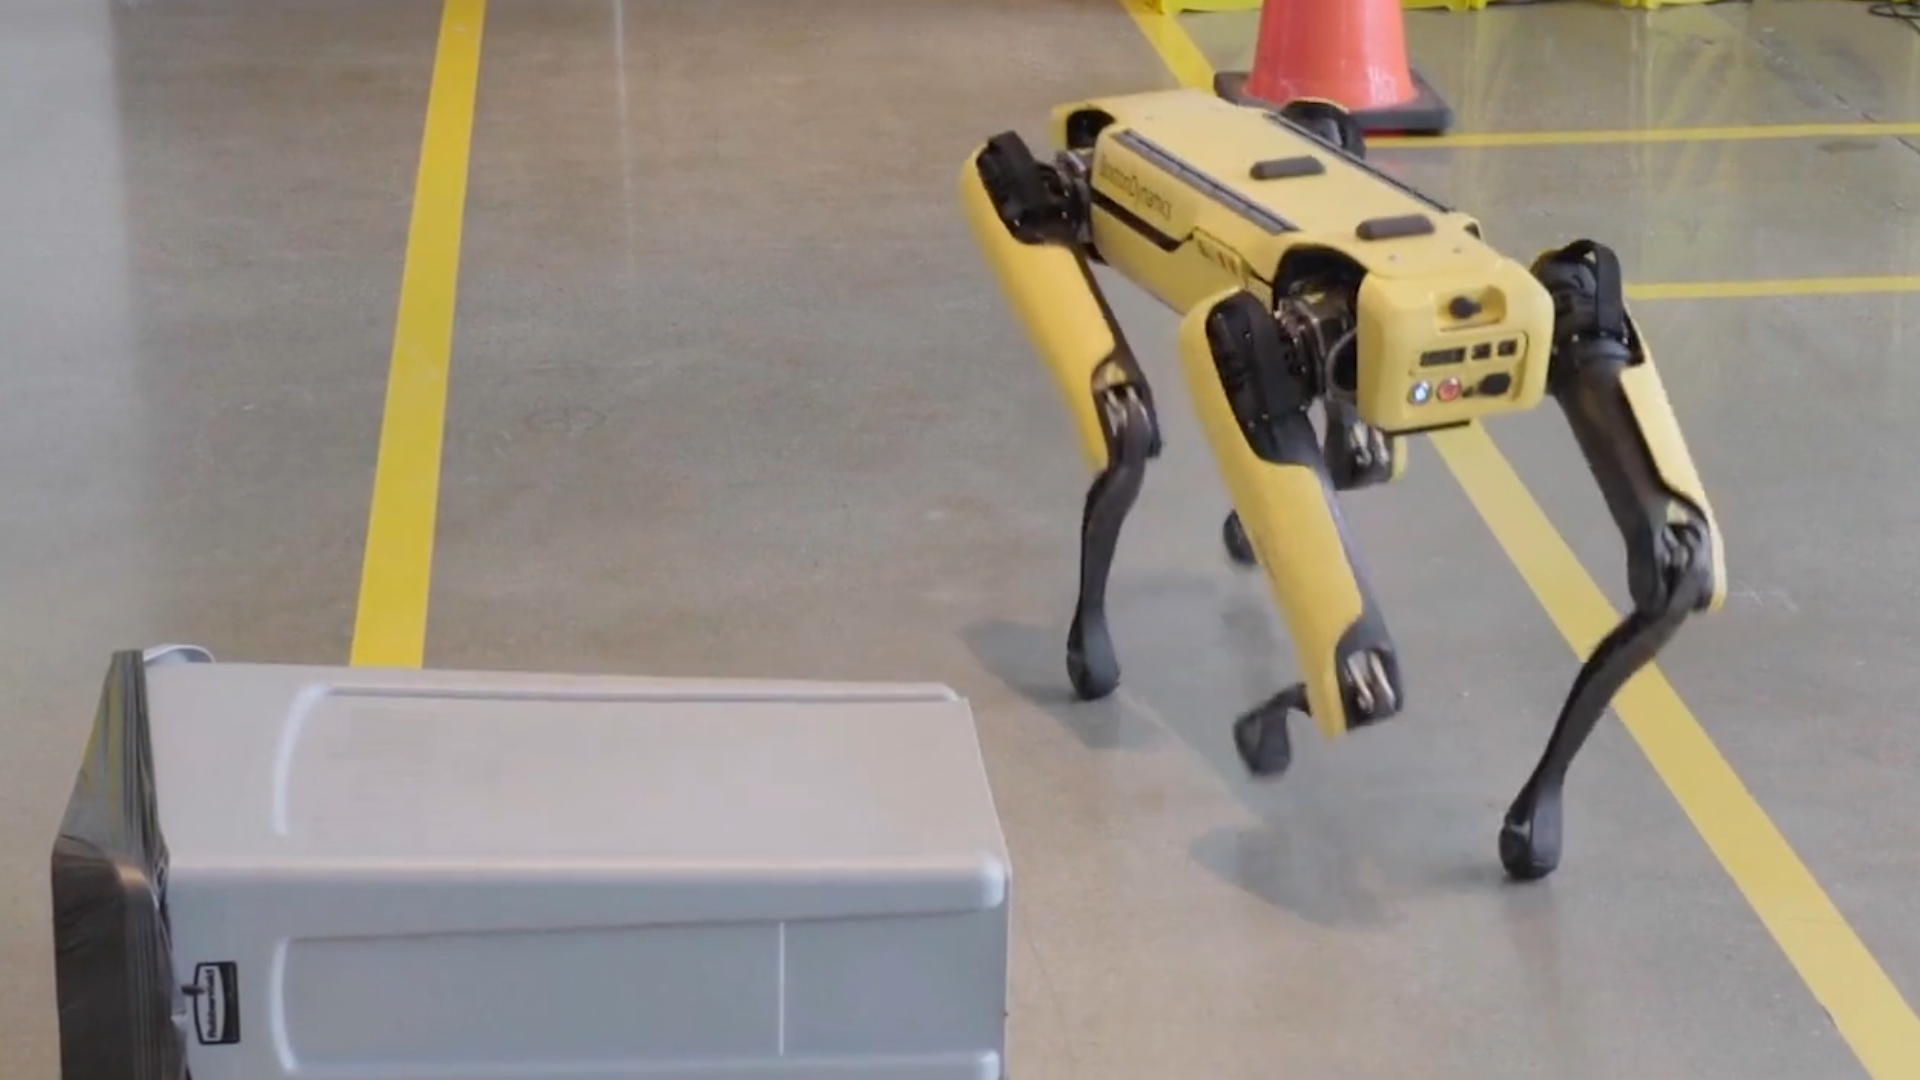 Repérez le chien robot se déplaçant autour d'une poubelle renversée.